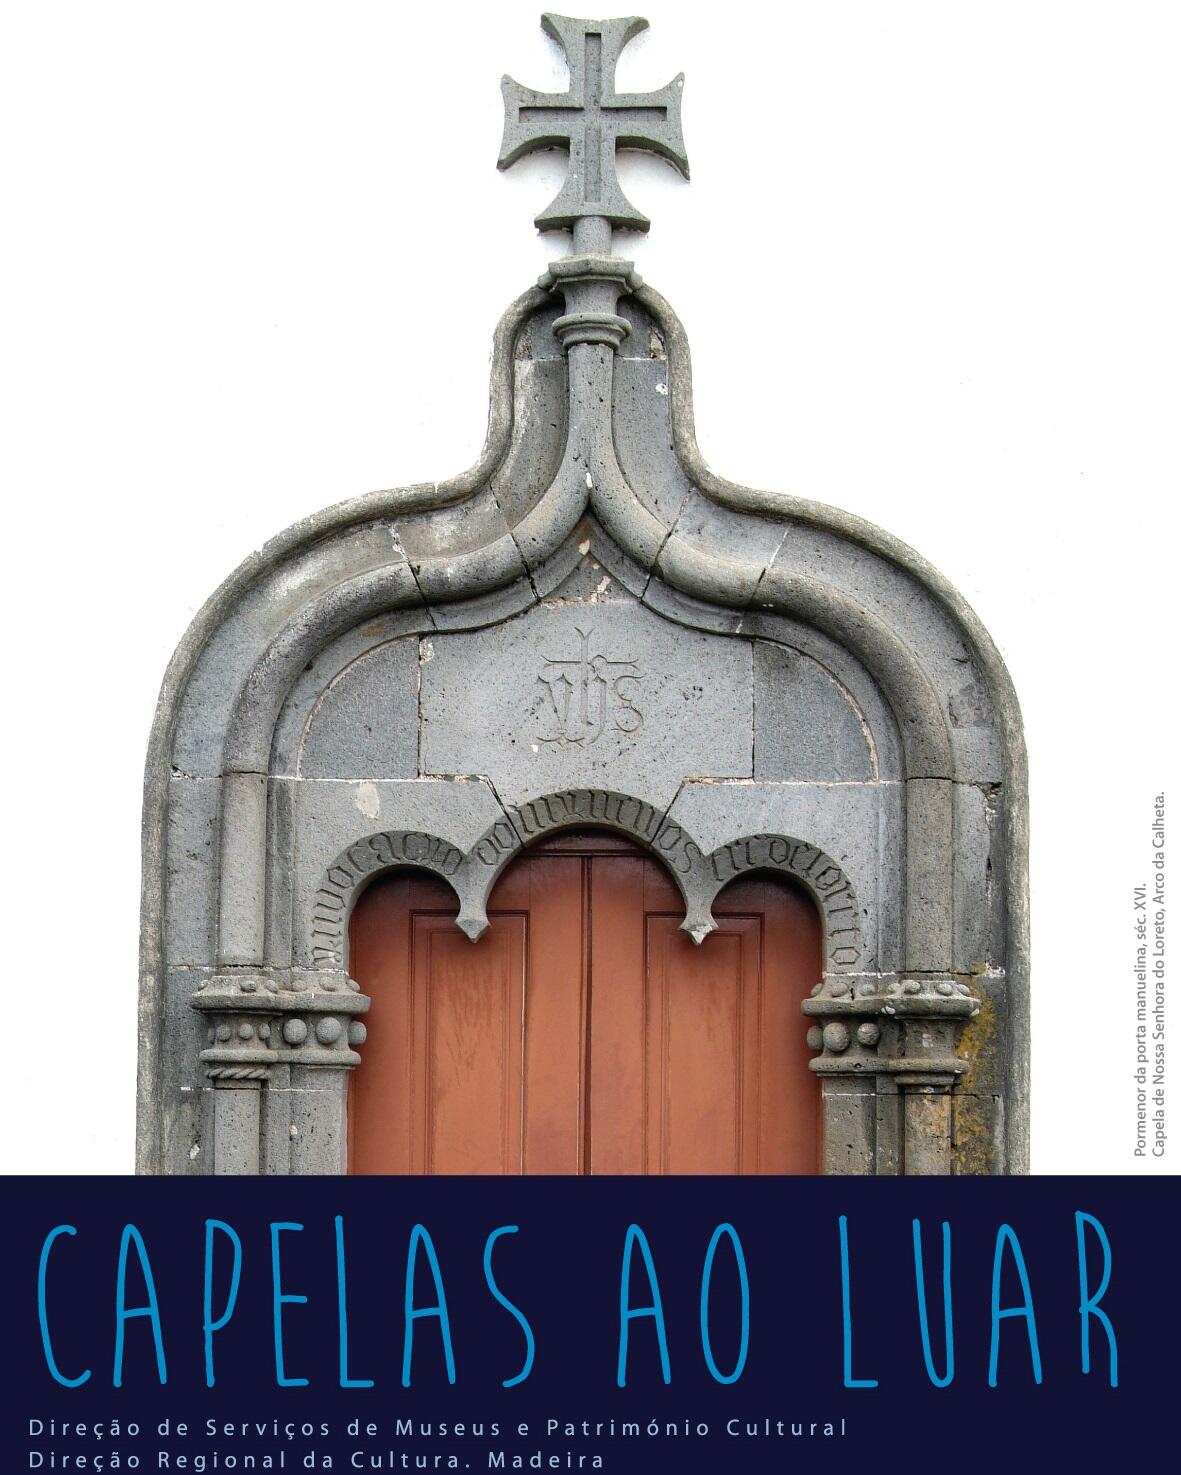 “Capelas ao Luar” prosseguem, amanhã, dia 11 maio, na Capela de Nossa Senhora do Loreto